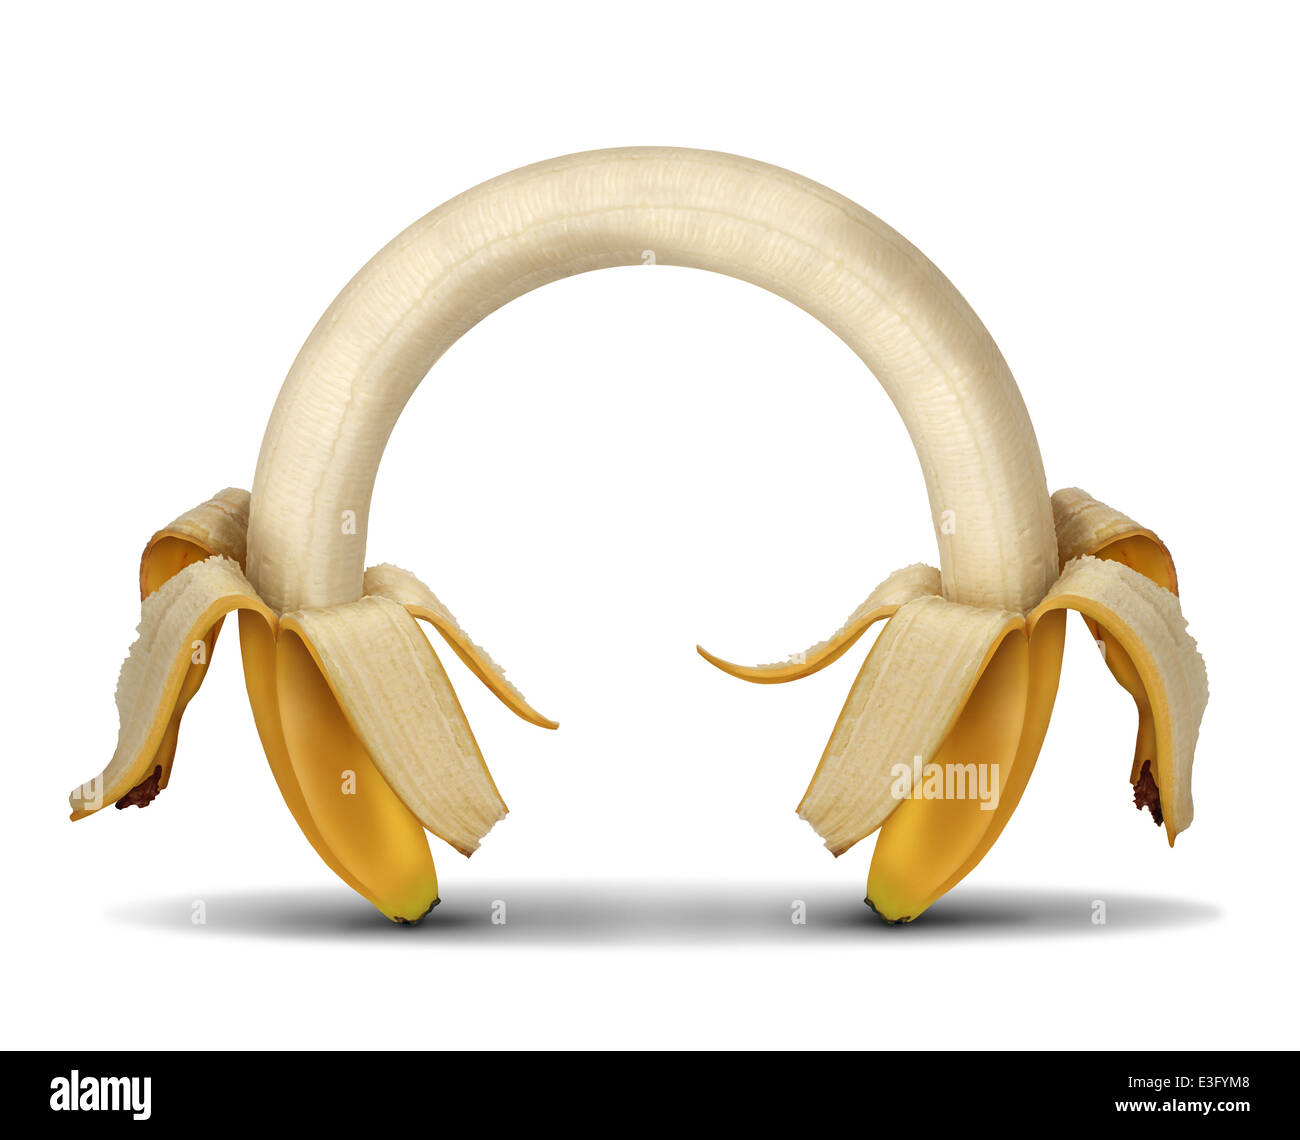 Connexion et alimentation Nutrition concept énergétique que deux bananes ouvert reliés ensemble comme un symbole d'une saine alimentation pour suivre un régime et un style de vie de forme physique sur un fond blanc. Banque D'Images